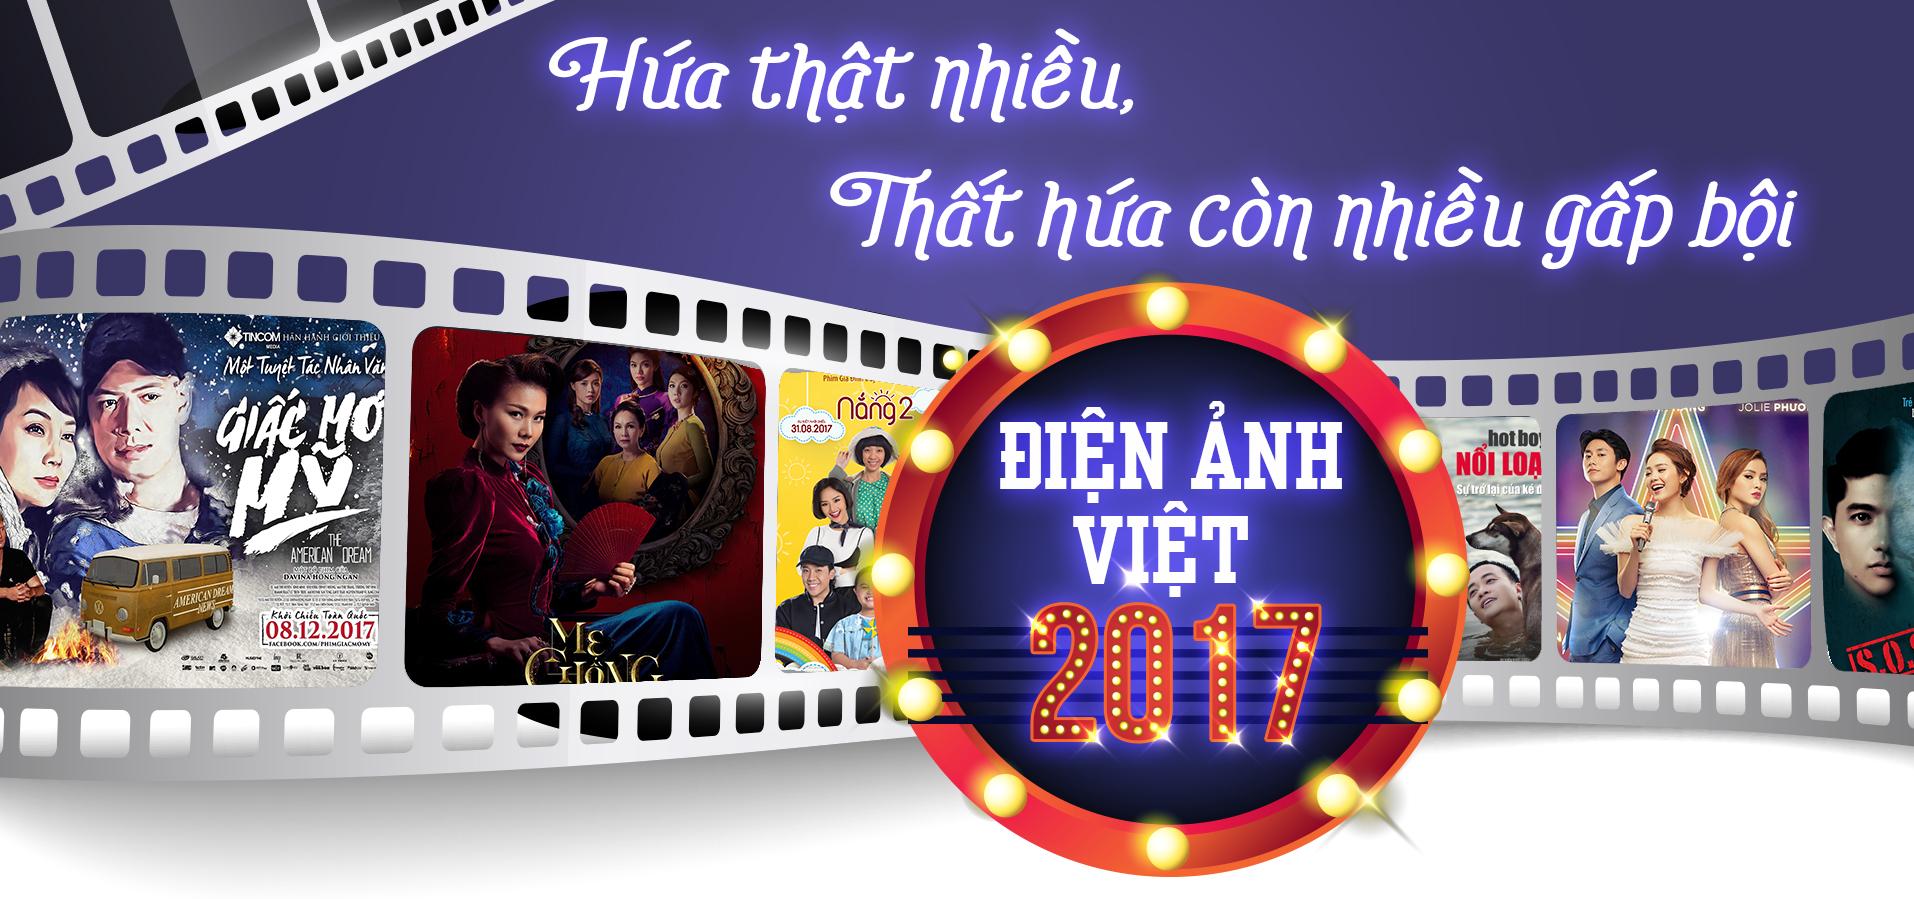 Điện ảnh Việt 2017 - Hứa thật nhiều, thất hứa còn nhiều gấp bội